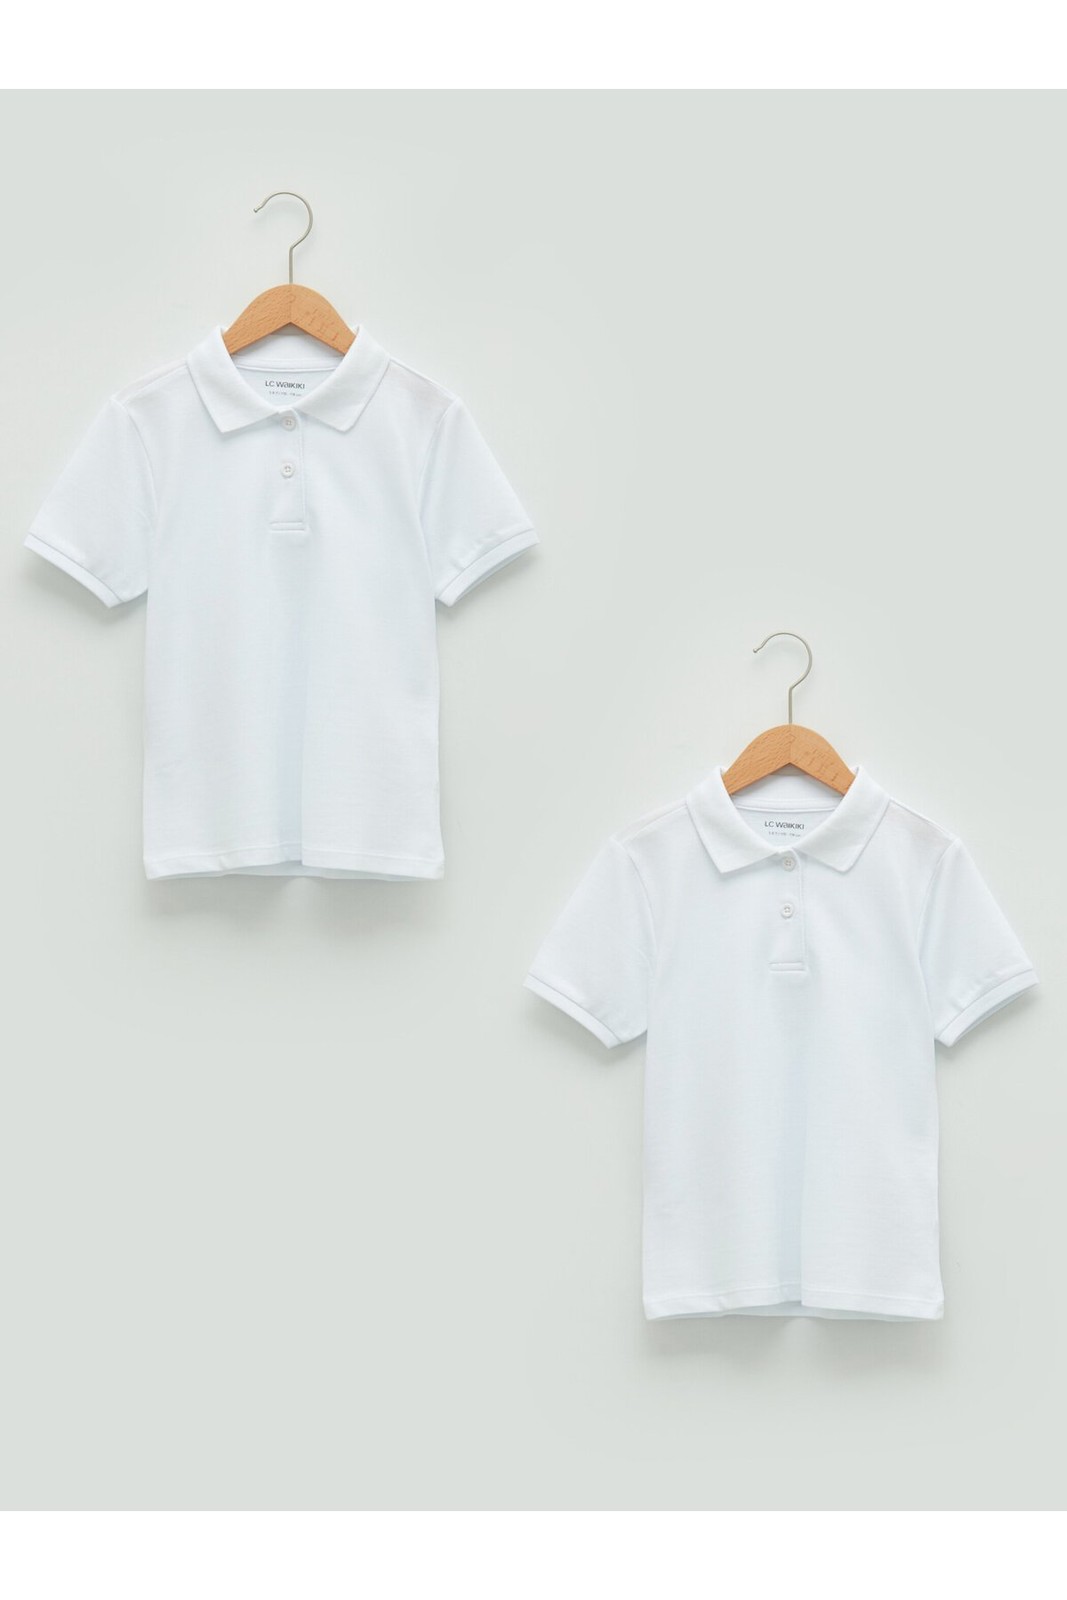 LC Waikiki 2-Piece Polo Neck Basic Short Sleeve Cotton Girls' T-Shirt